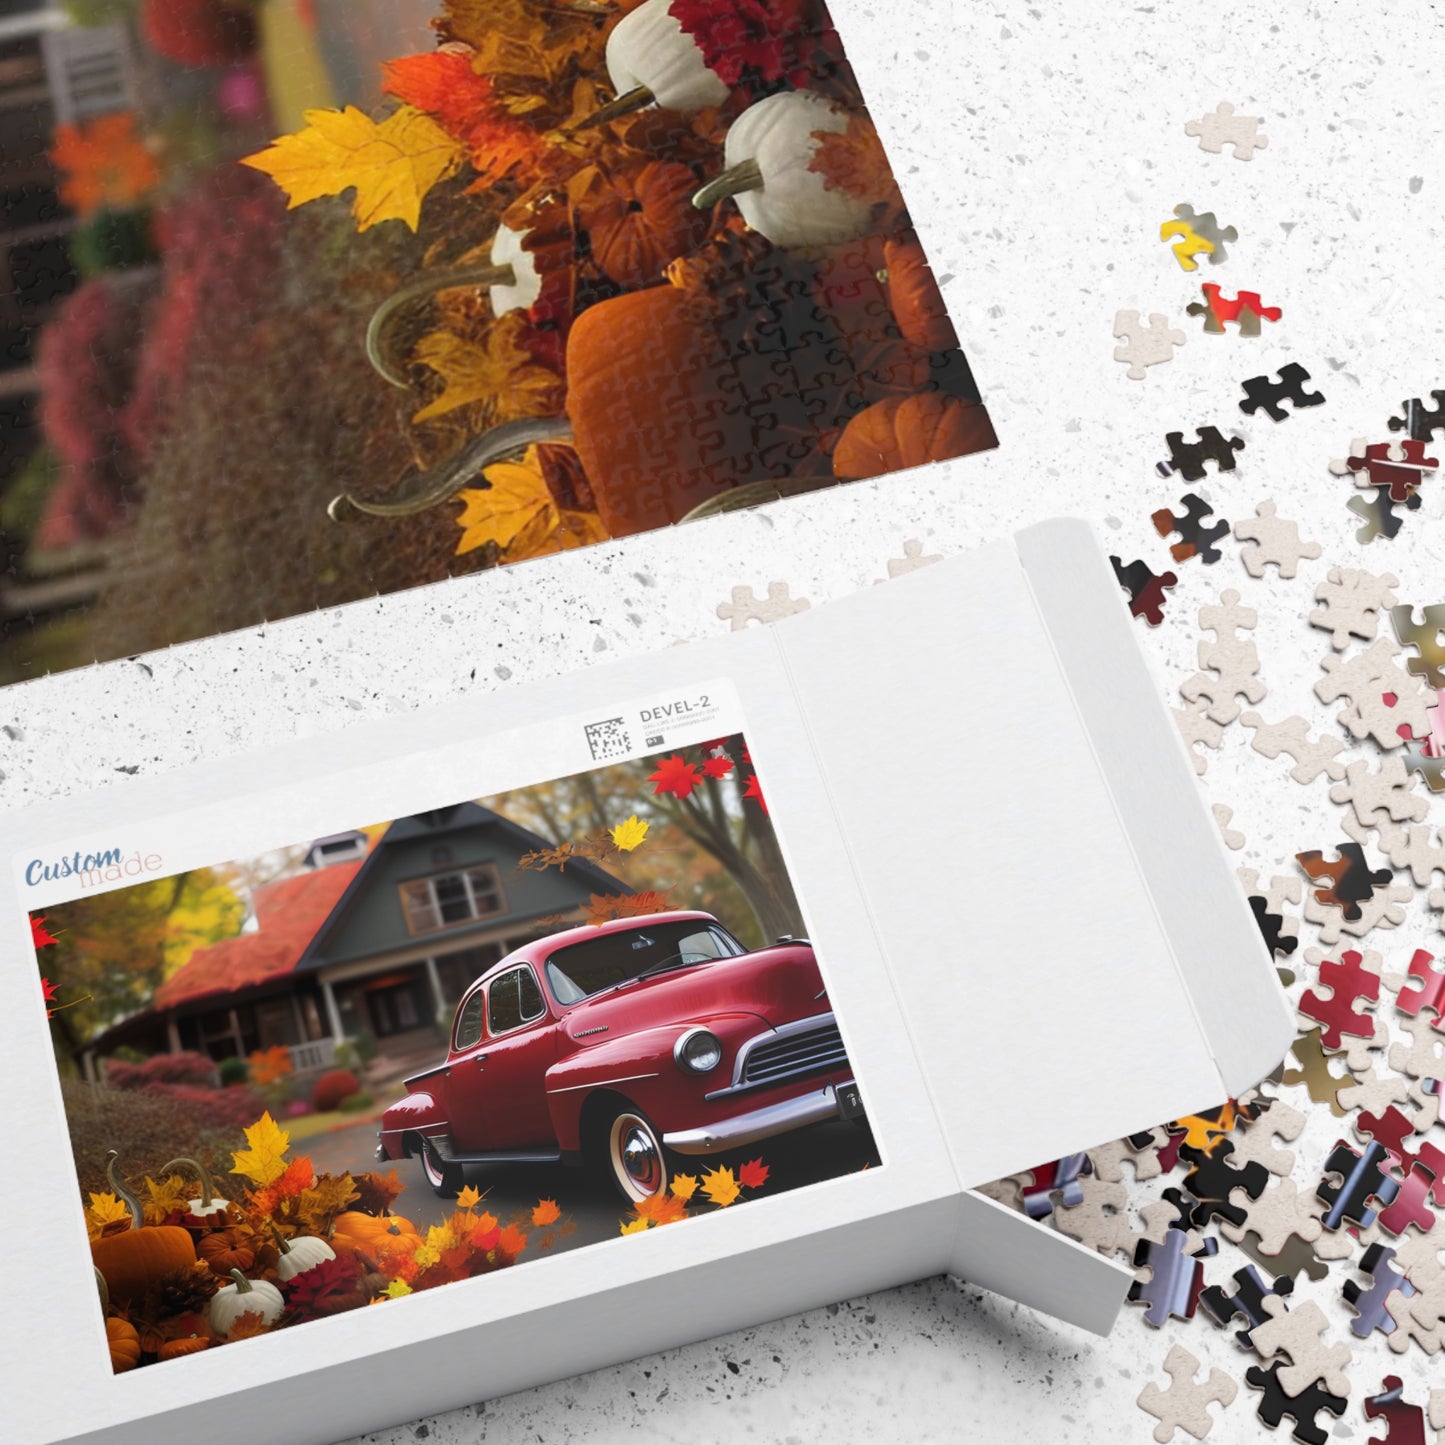 Car in Autumn Puzzle (110, 252, 500, 1014-piece)